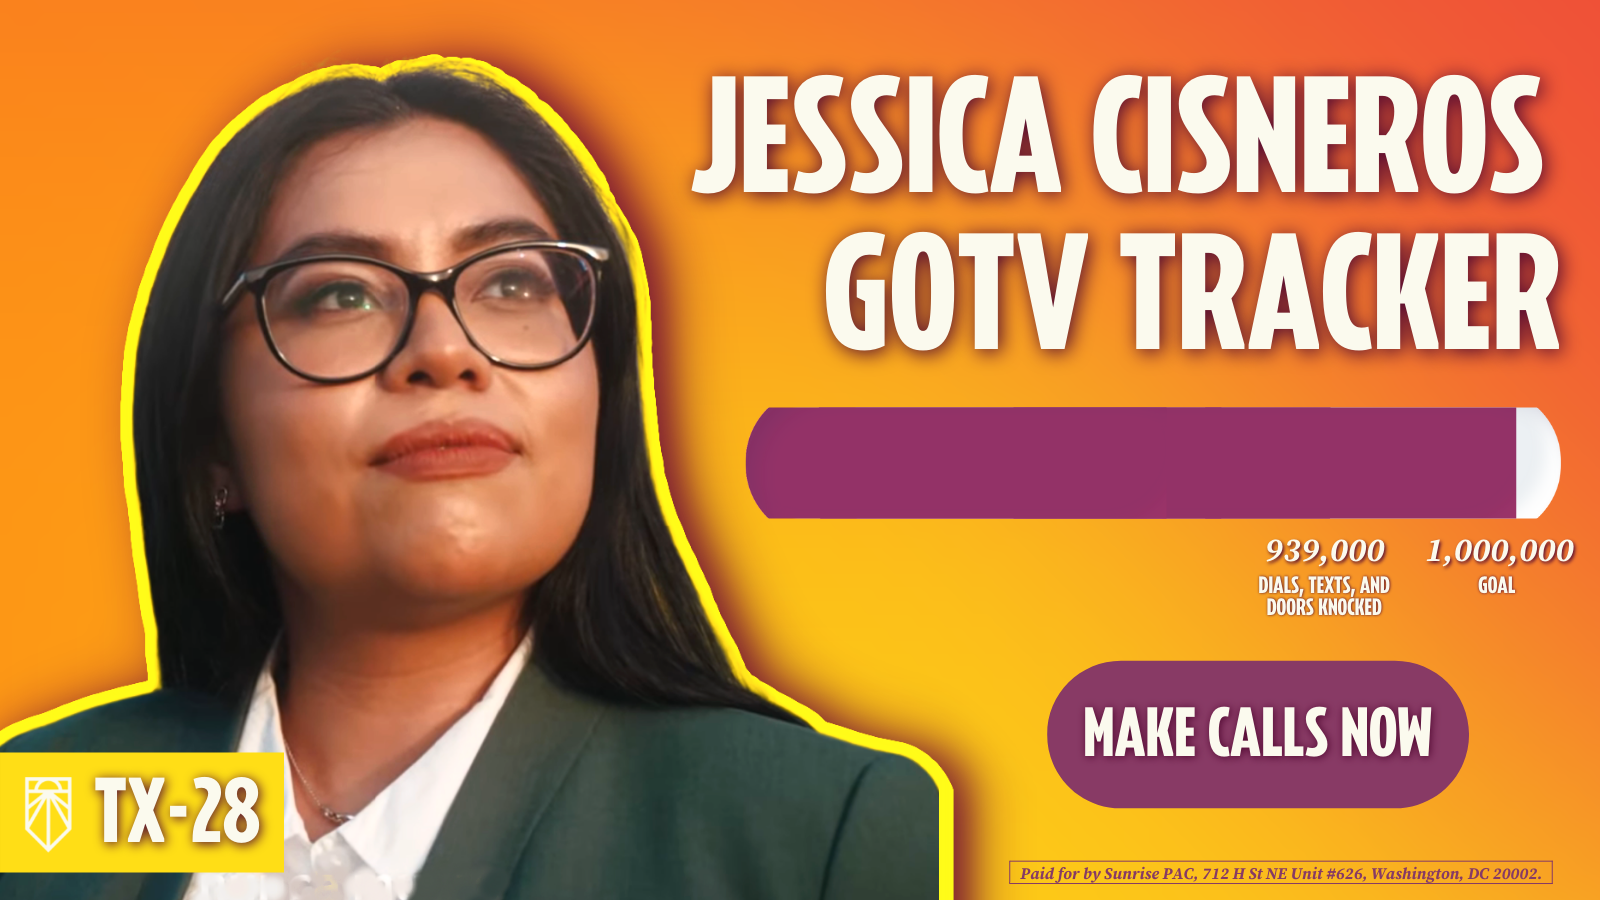 Jessica Cisneros GOTV Tracker - 939,000 tentativi di contatti elettorali, 1,000,000 di obiettivi - Effettua chiamate. Pagato da Sunrise PAC, 712 H St NE Unit n. 626, Washington, DC 20002.